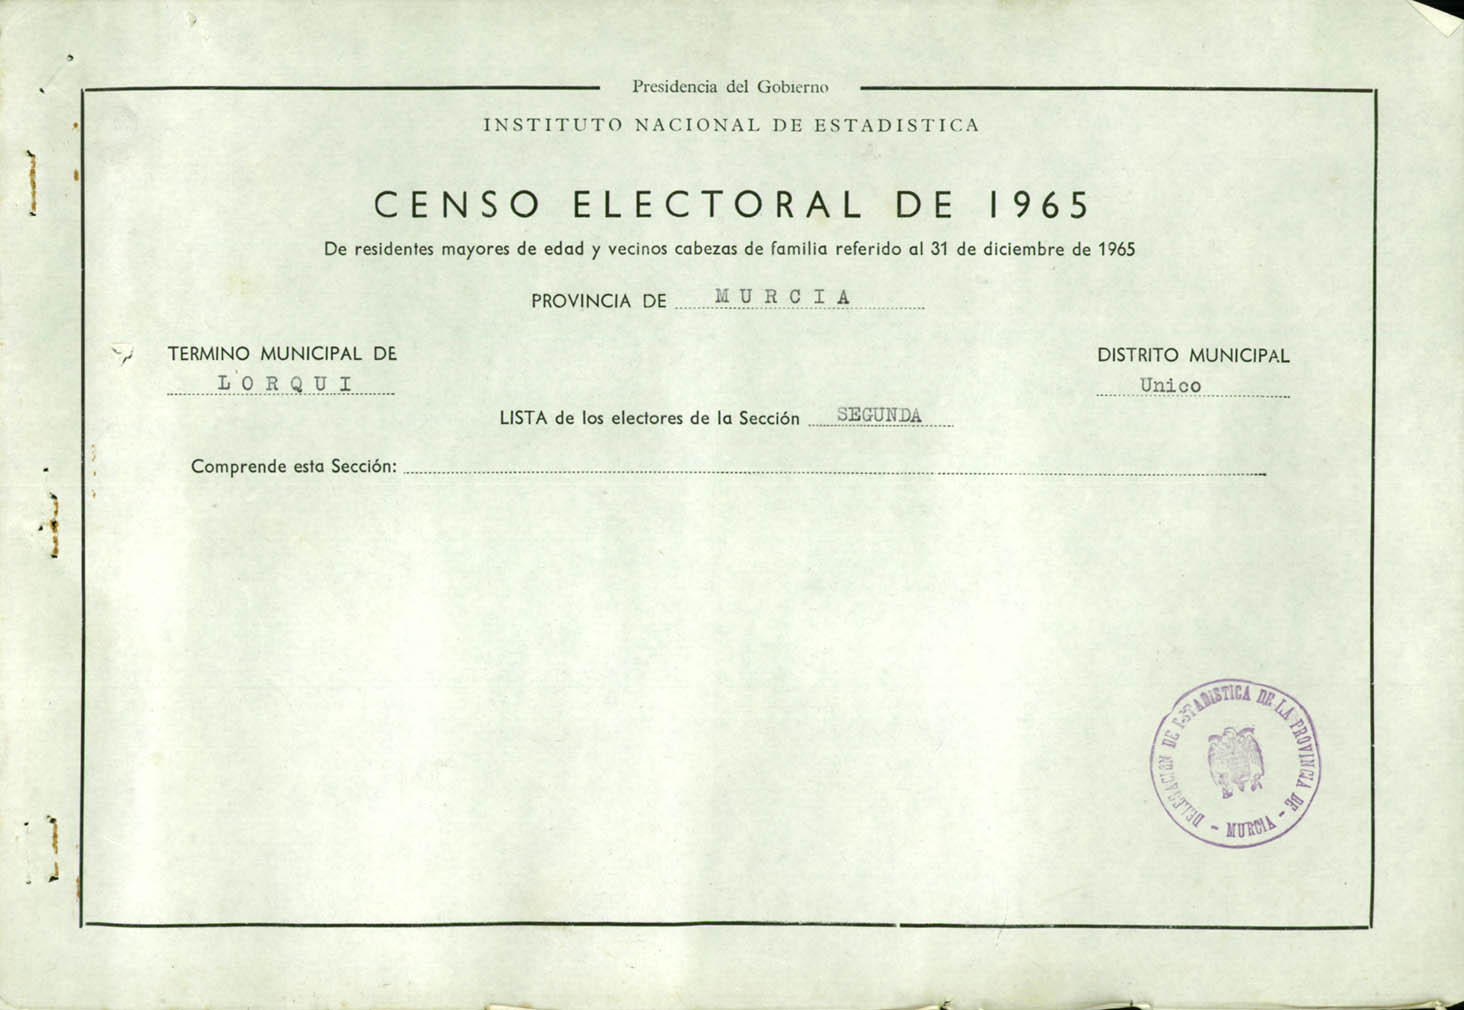 Censo electoral provincial de 1965: listas definitivas de Lorquí, Distrito Único, sección 2ª.